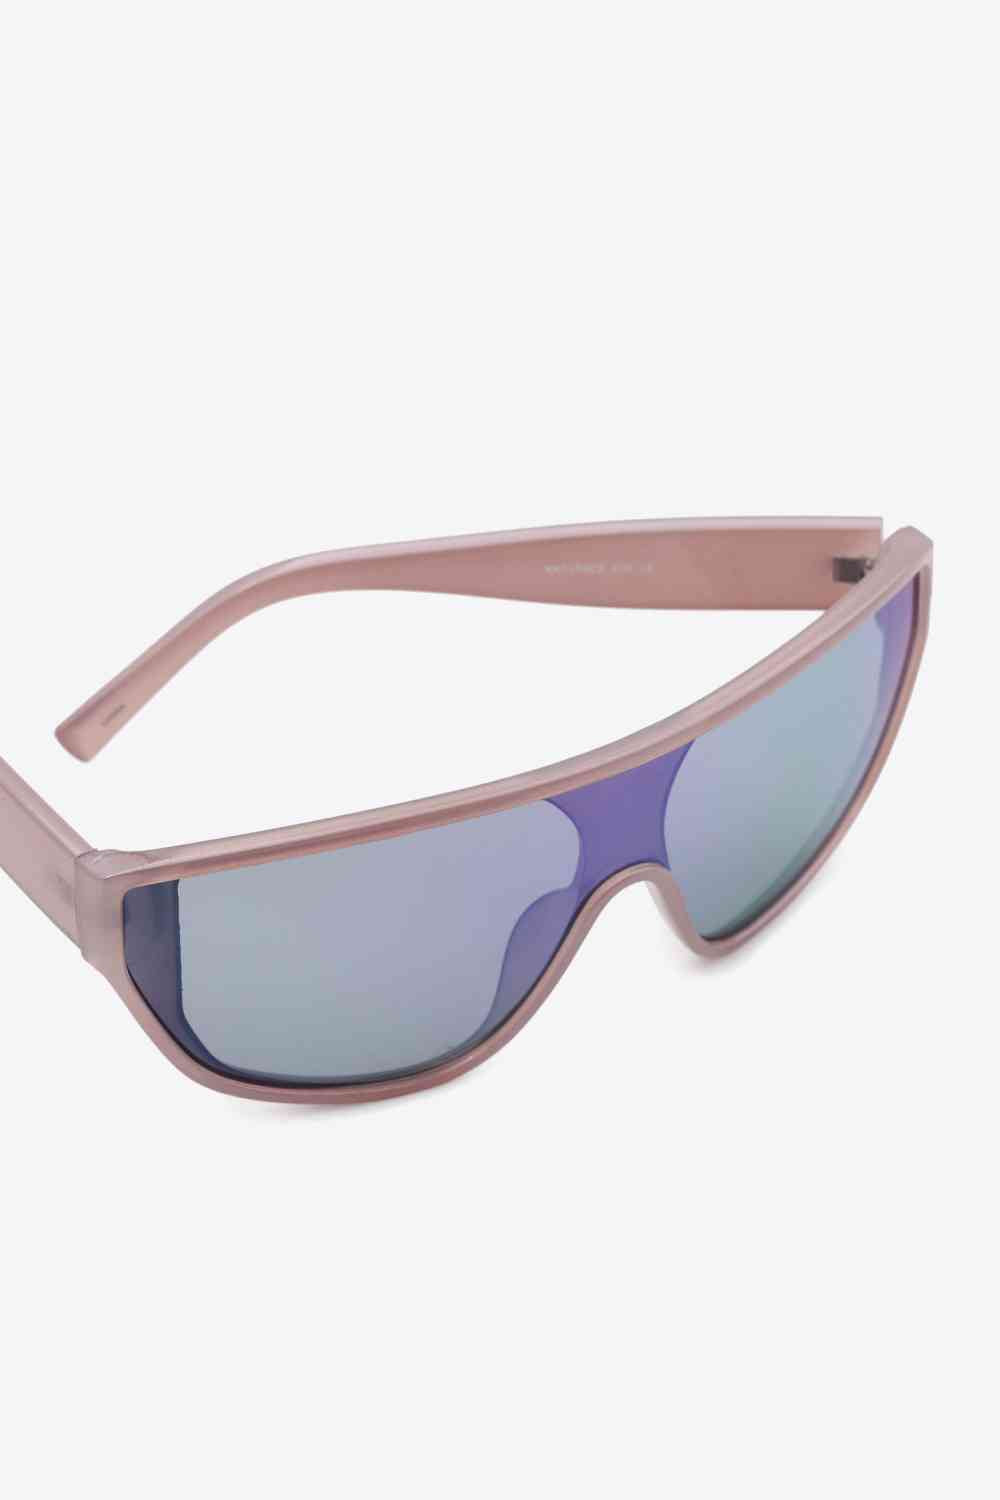 TEEK - Womens Wayfarer Sunglasses EYEGLASSES TEEK Trend   